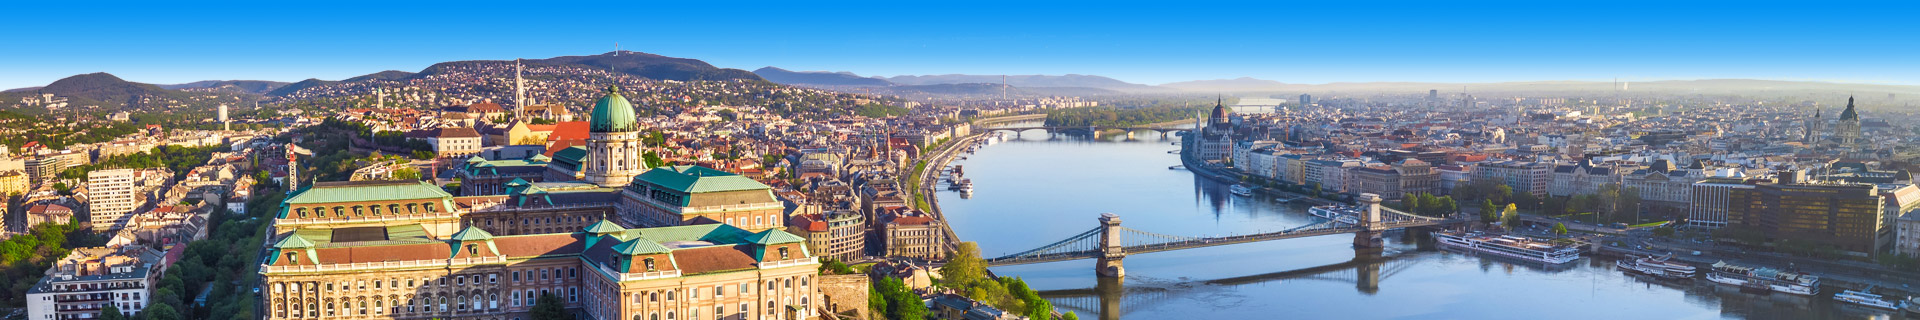 Uitzicht op gebouwen, een brug en rivier in de stad Budapest in Hongarije